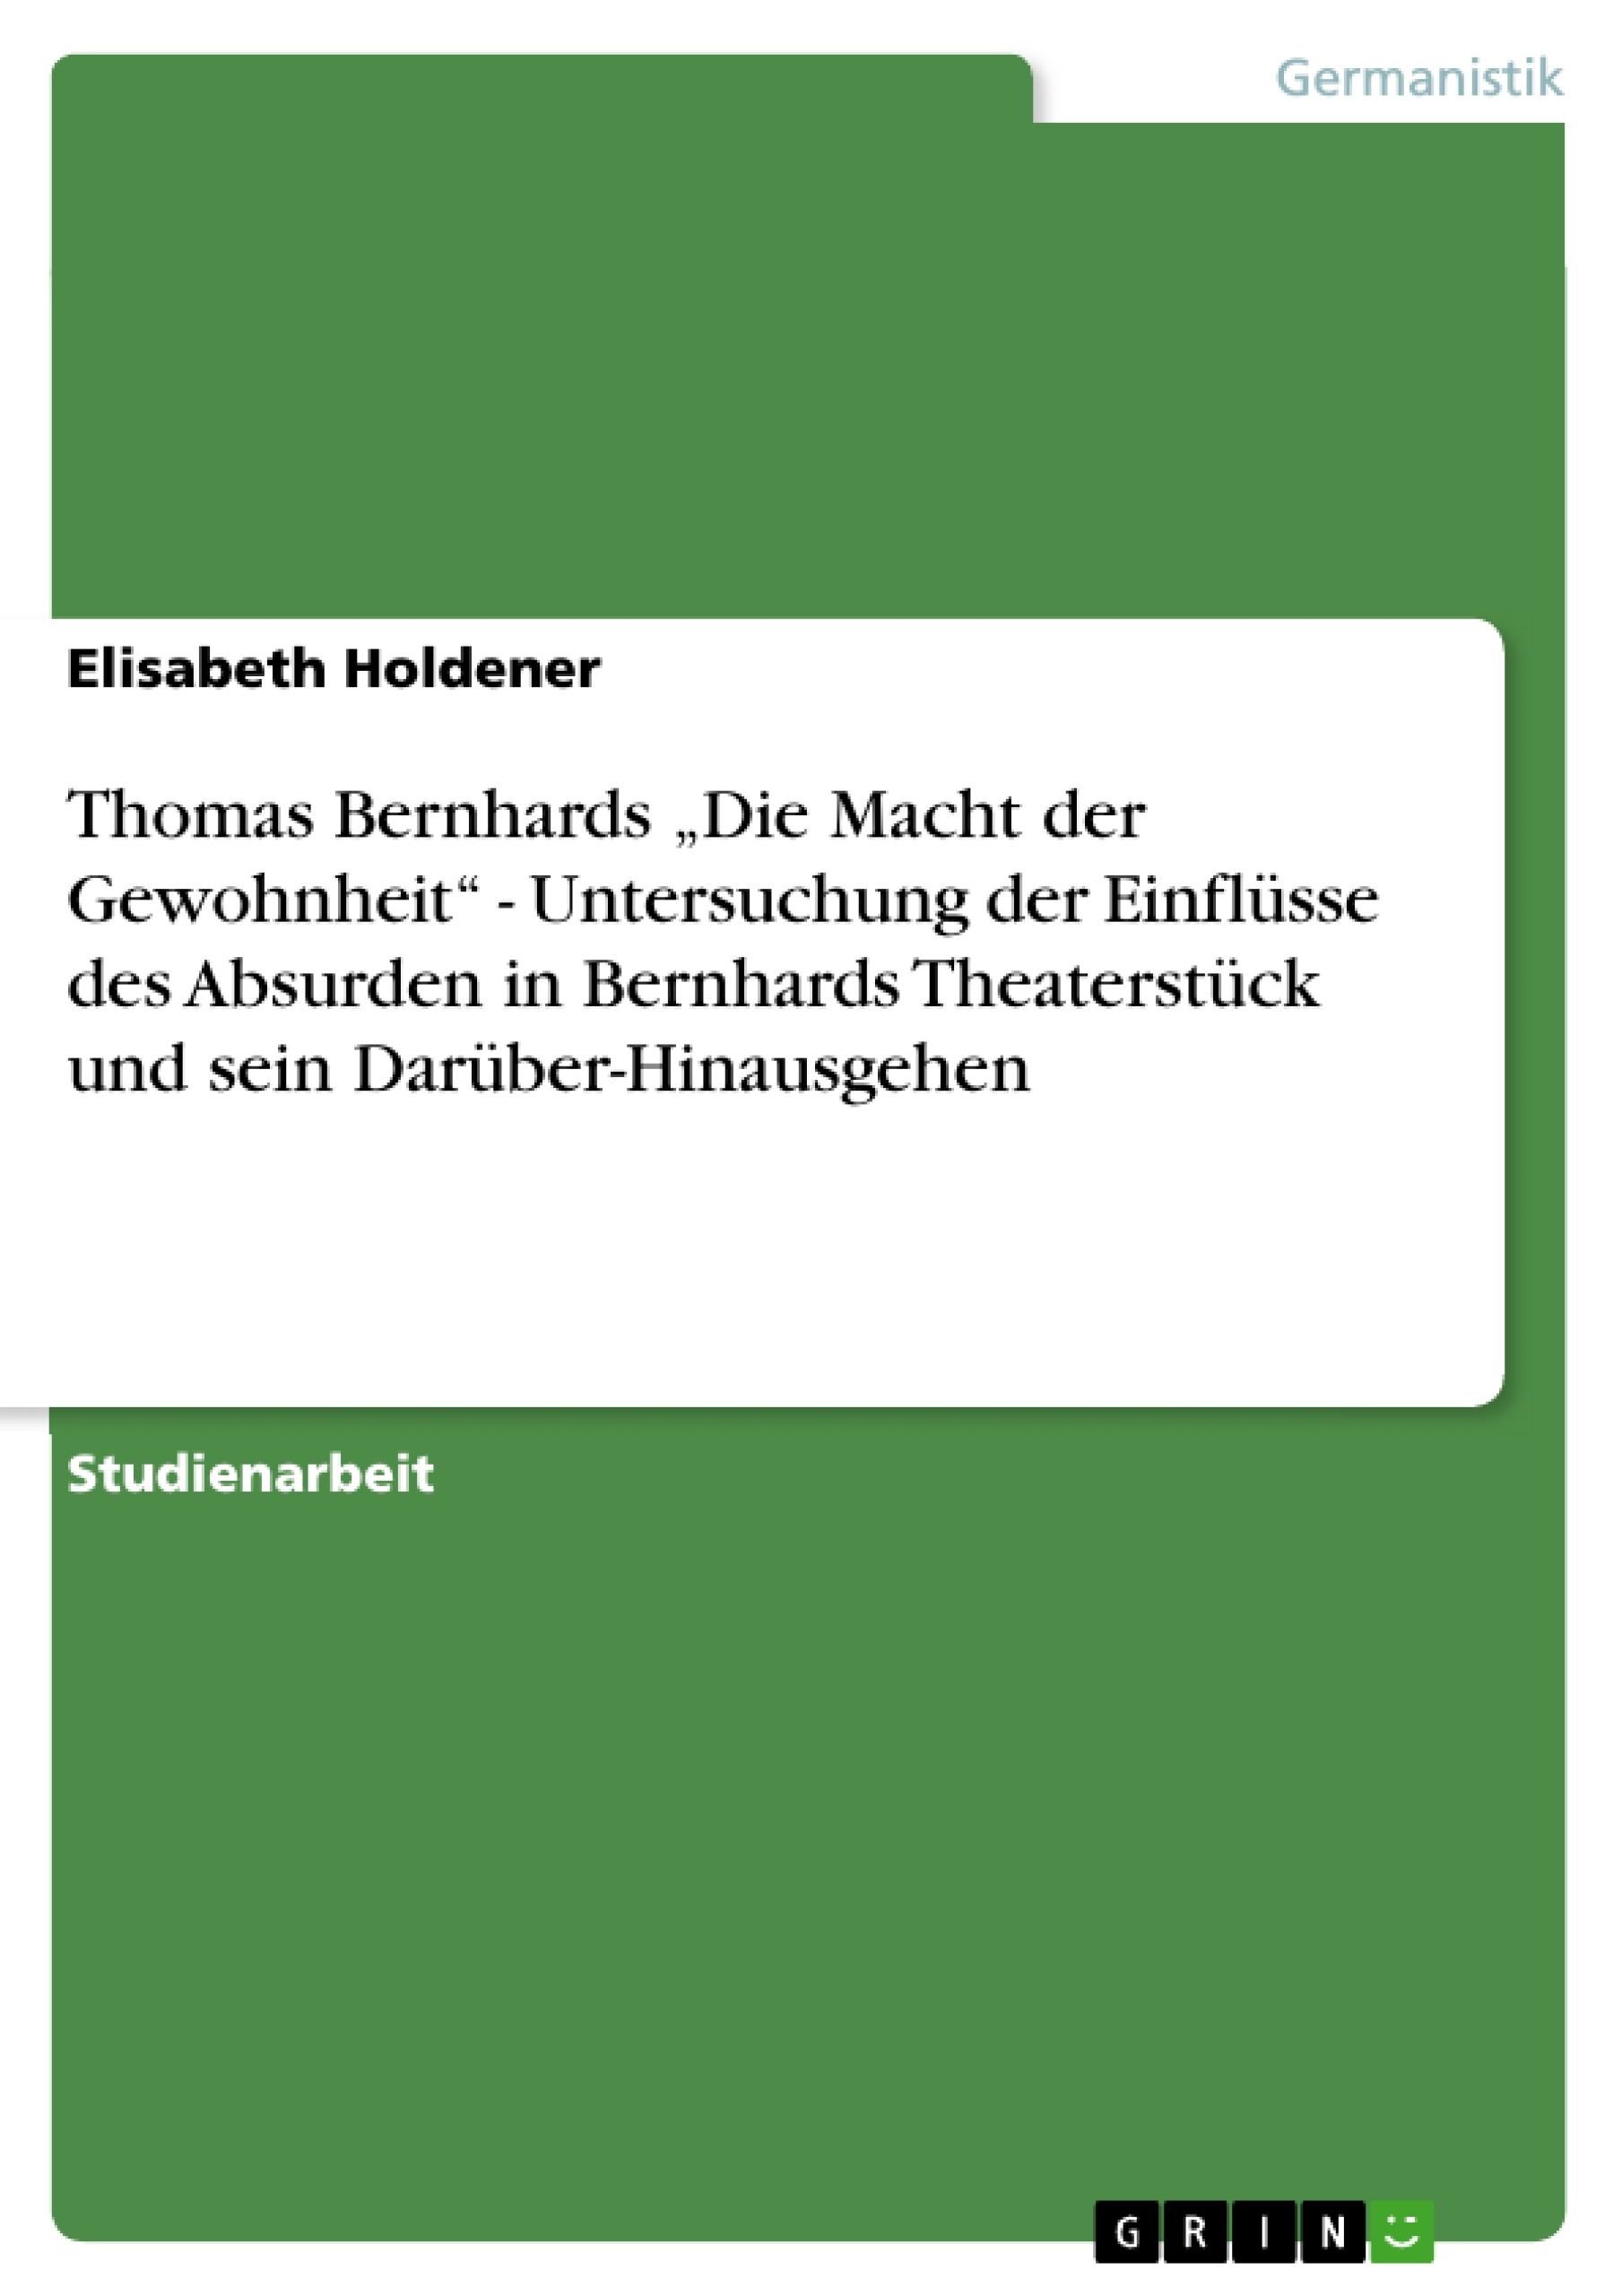 Titre: Thomas Bernhards „Die Macht der Gewohnheit“ - Untersuchung der Einflüsse des Absurden in Bernhards Theaterstück und sein Darüber-Hinausgehen